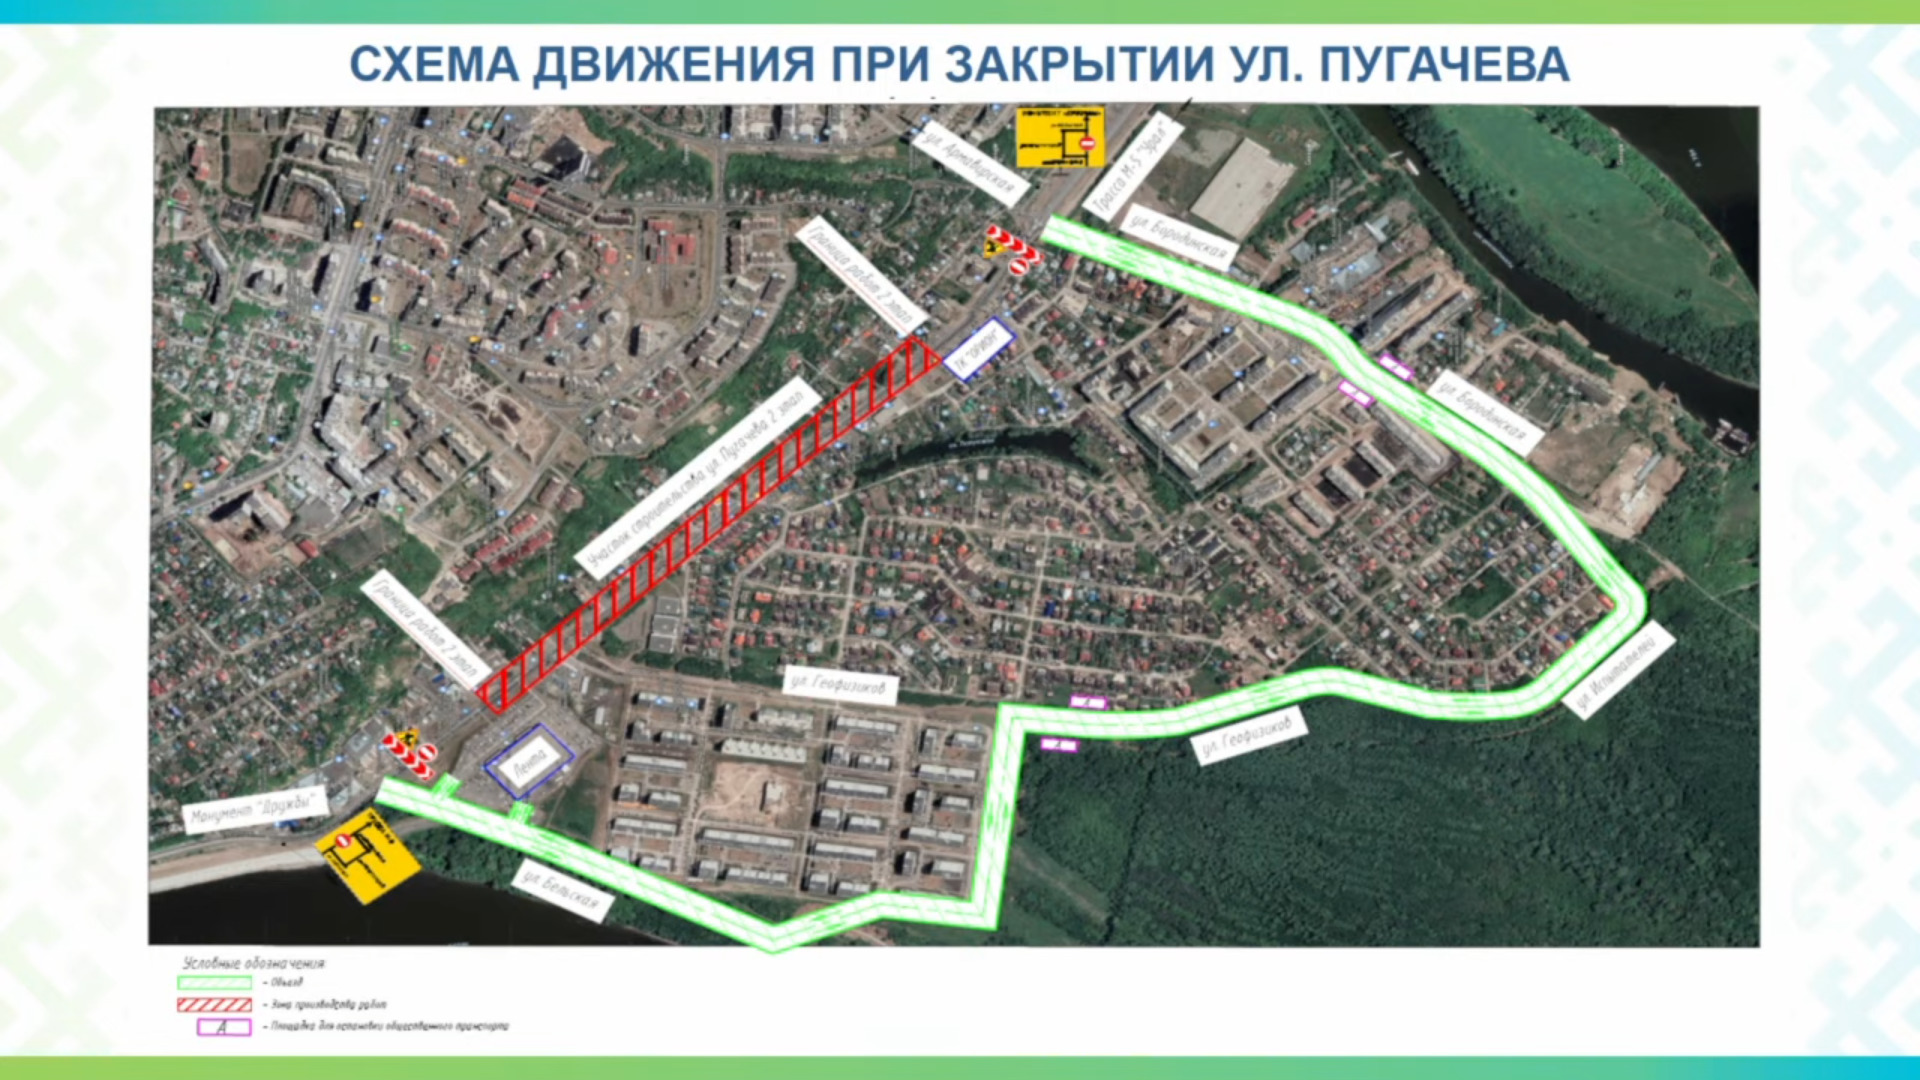 Закрыть движение на Пугачева, на участке от улиц Бельской до Бородинской, планируется после празднования Дня города Уфы 12 июня